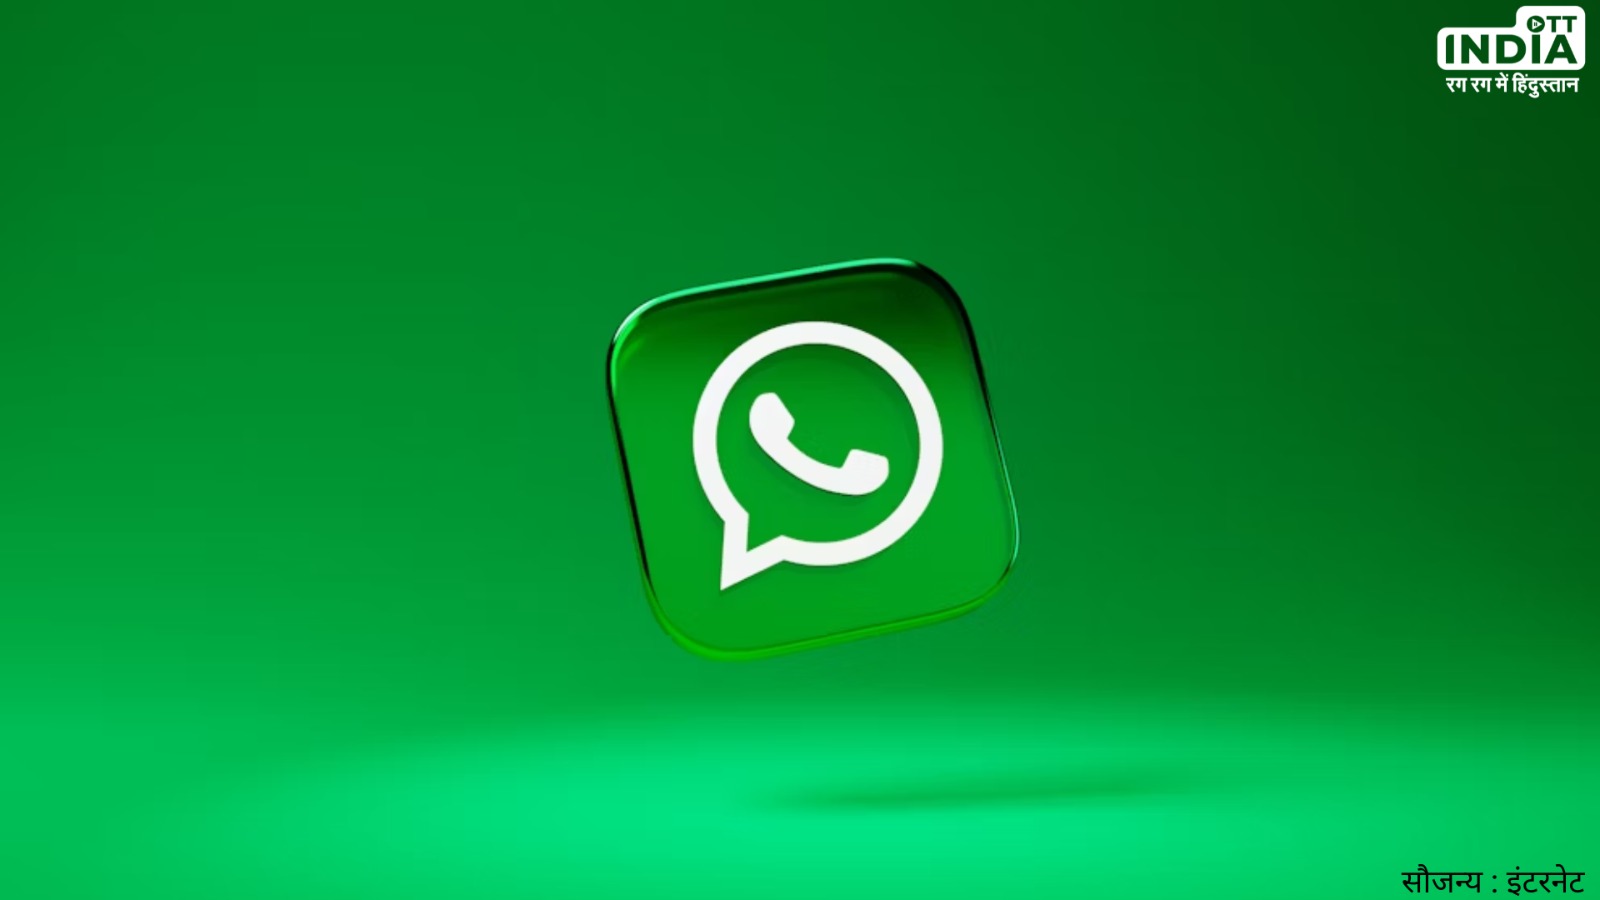 WhatsApp Web Chat Lock: बीटा वर्जन में लॉन्च हुआ व्हाट्सएप वेब चैट लॉक फीचर, जाने कैसे करेगा काम